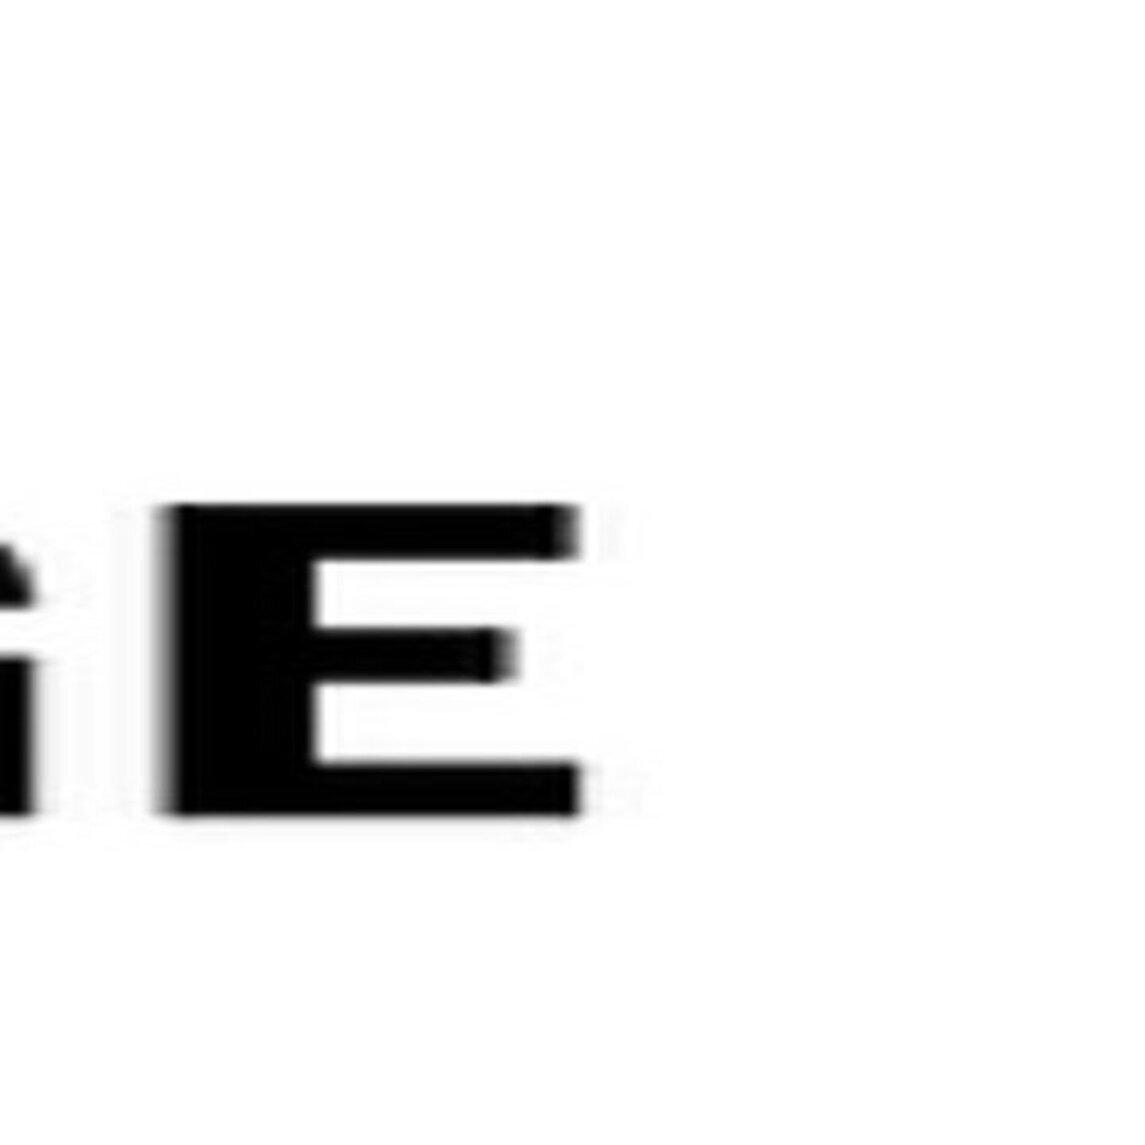 Atelier De l'Affichage/Sign Shop Dorval (514)631-7375